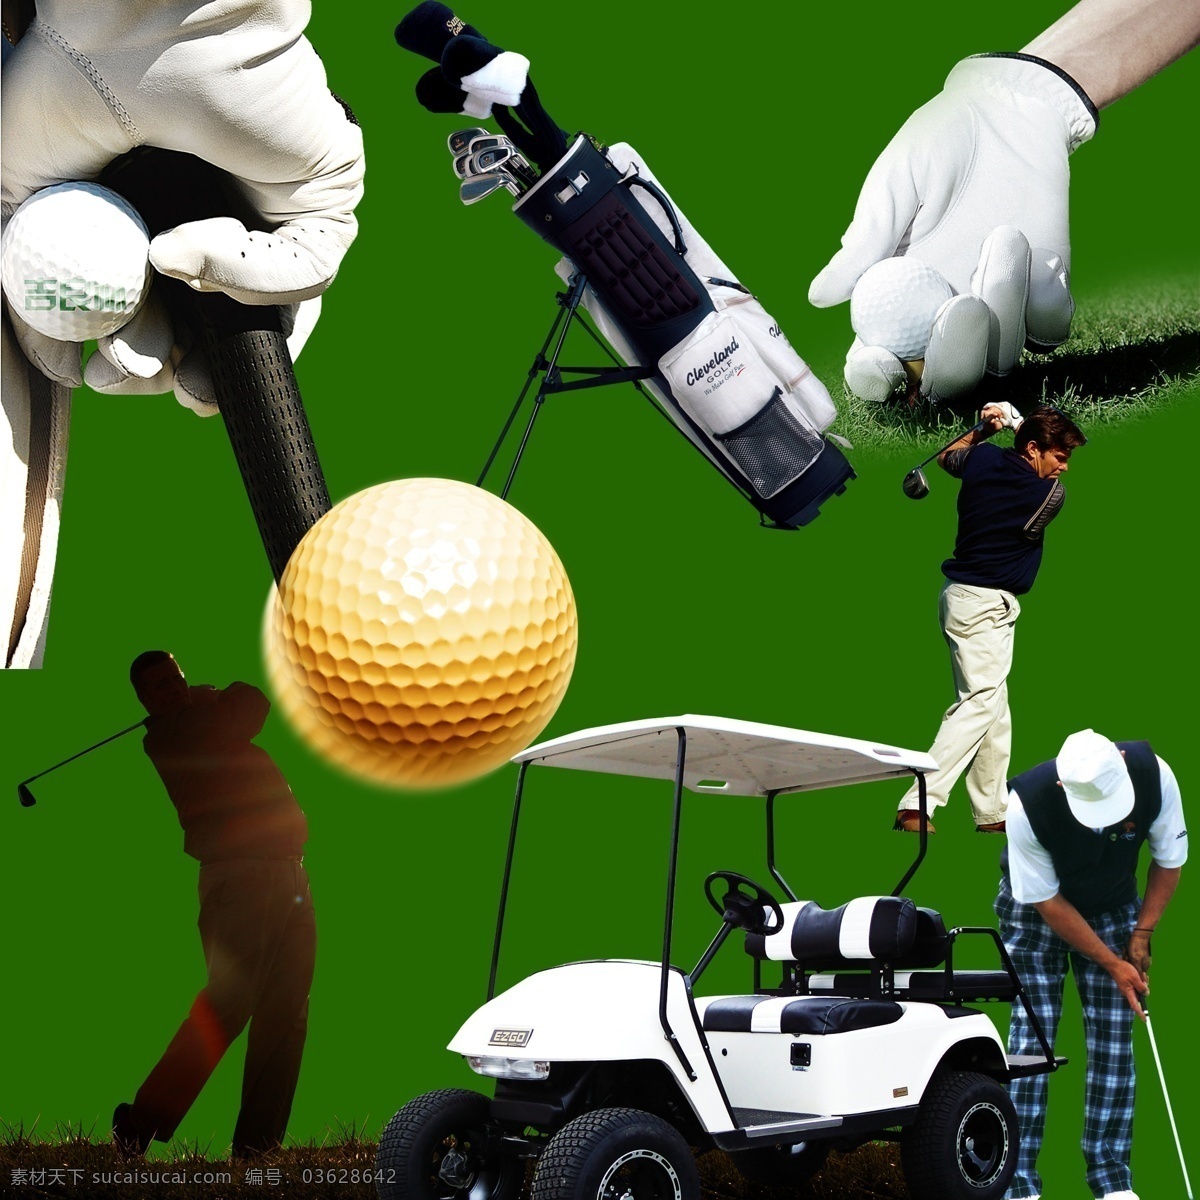 高尔夫用具 大全 高尔夫 手套 球杆 高尔夫球 高尔夫球车 推杆 果岭 分层 挥杆 男人 奢侈 生活 高尔夫球包 高尔夫球具 高尔夫用品 球童 高尔夫手套 风景 源文件